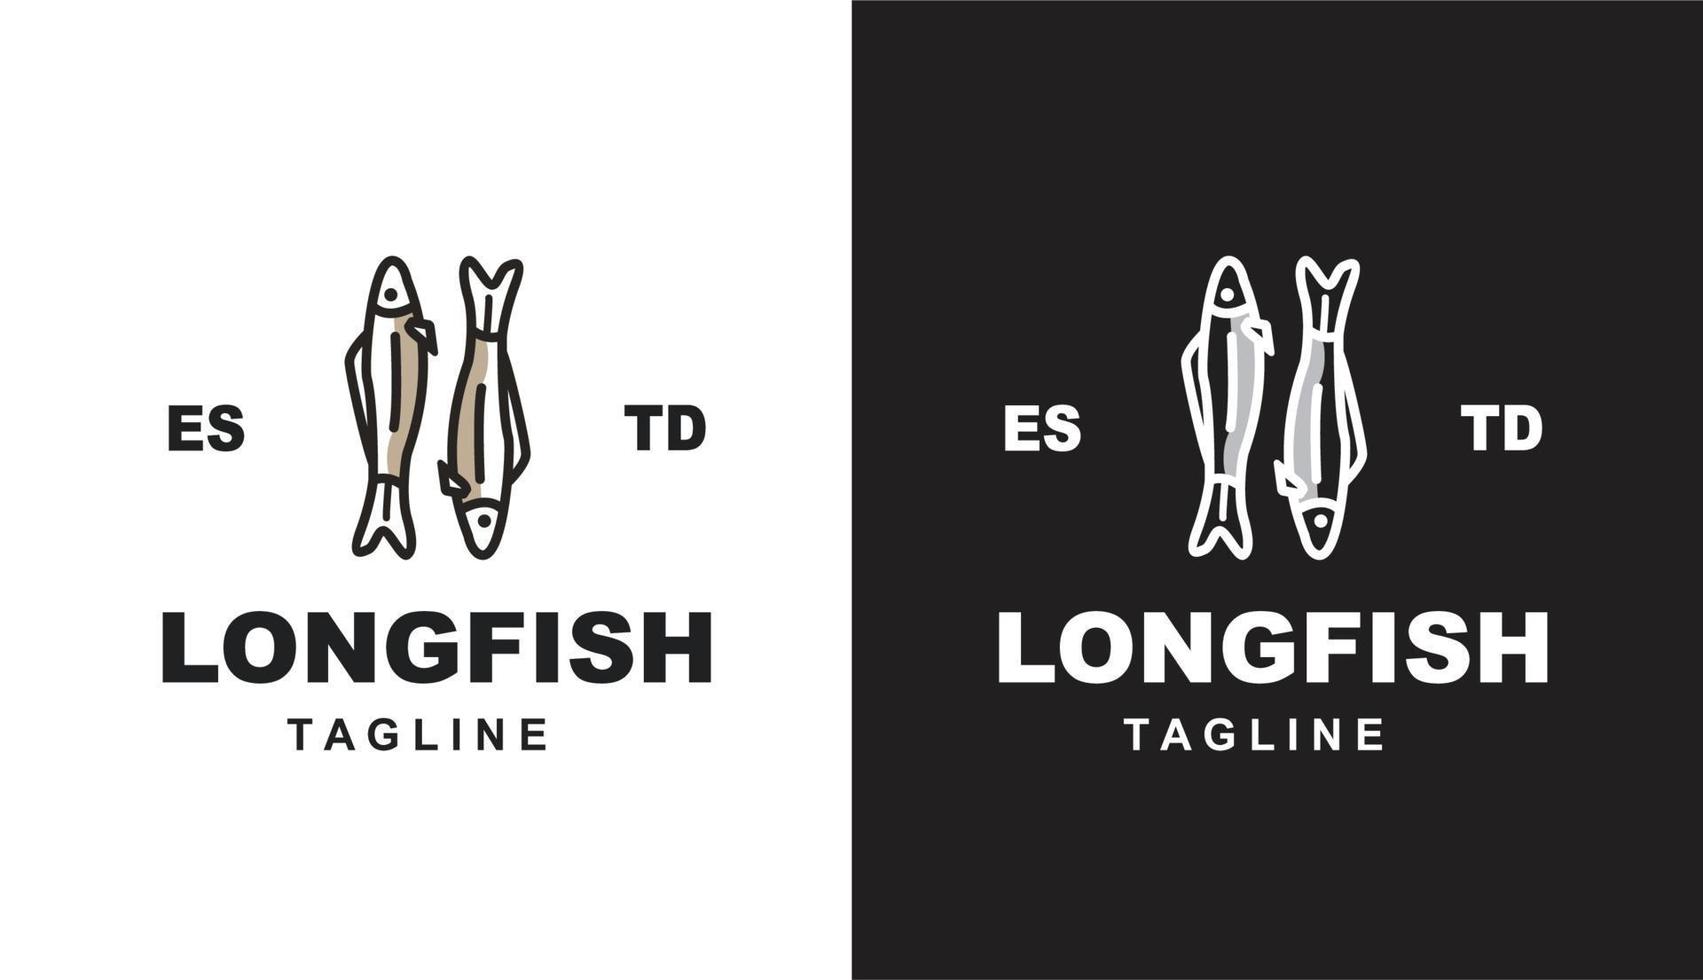 logo vintage minimalis de poisson long pour la marque alimentaire et le restaurant d'entreprise vecteur